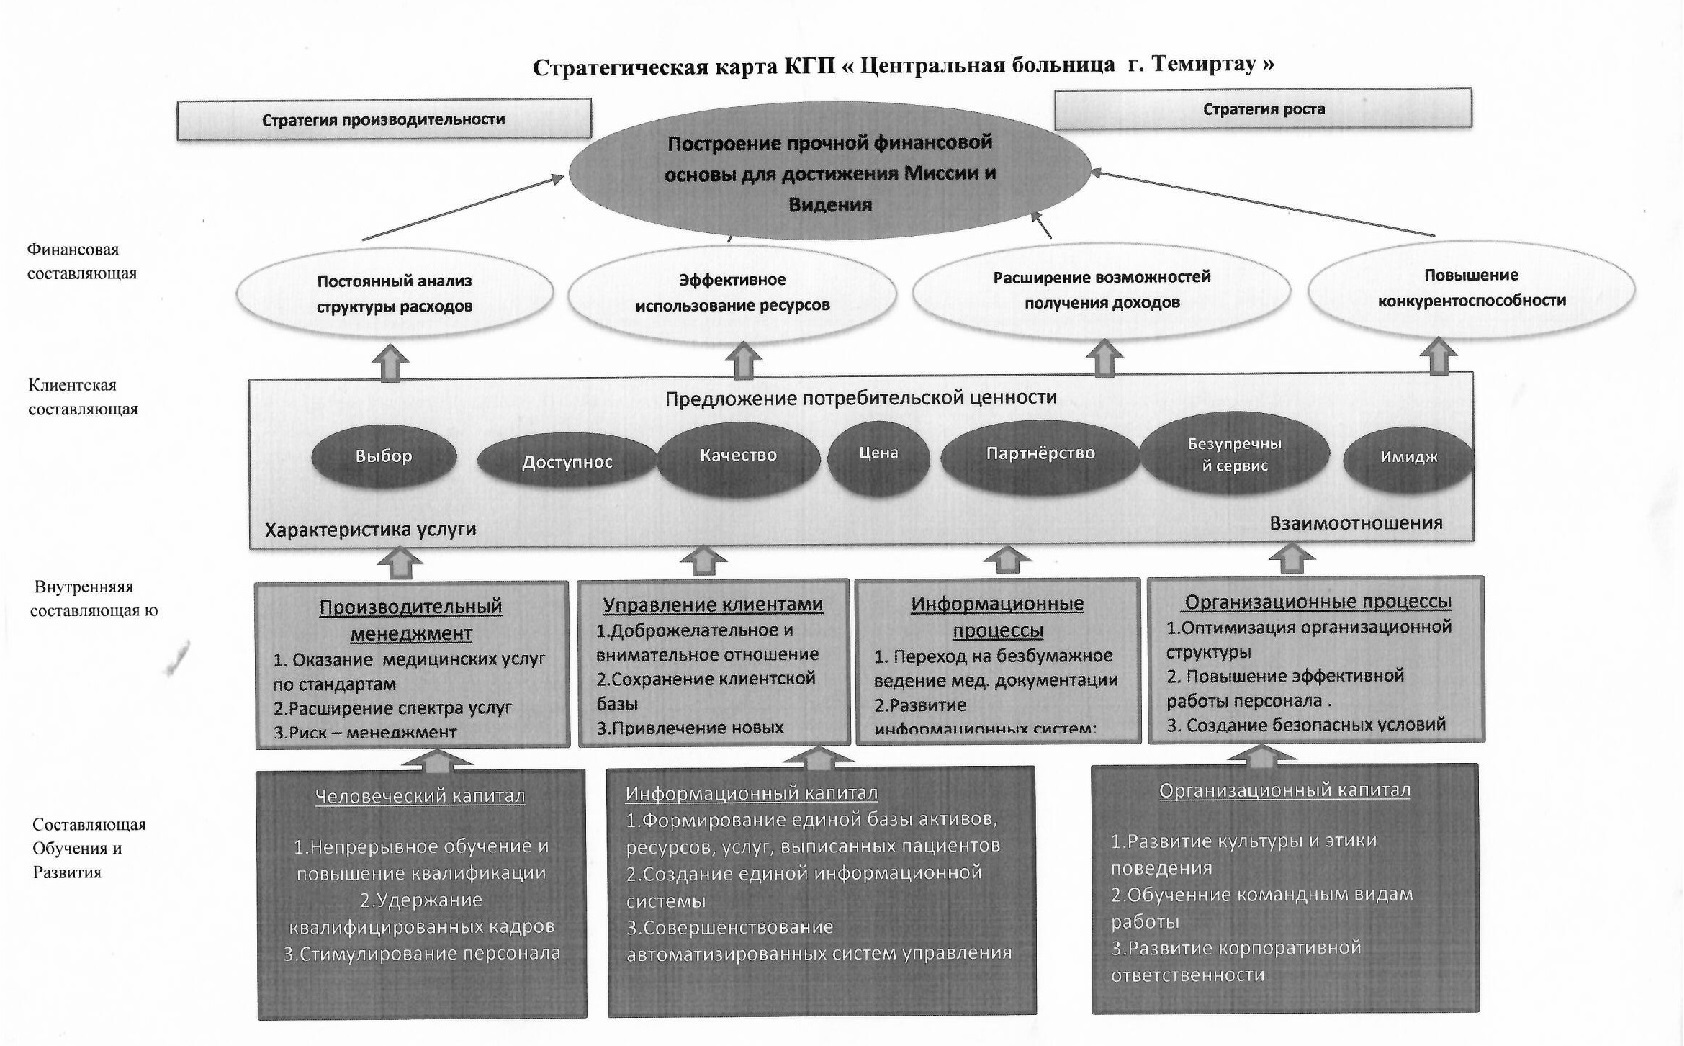 Стратегия план россия. Стратегический план платных медицинских услуг.